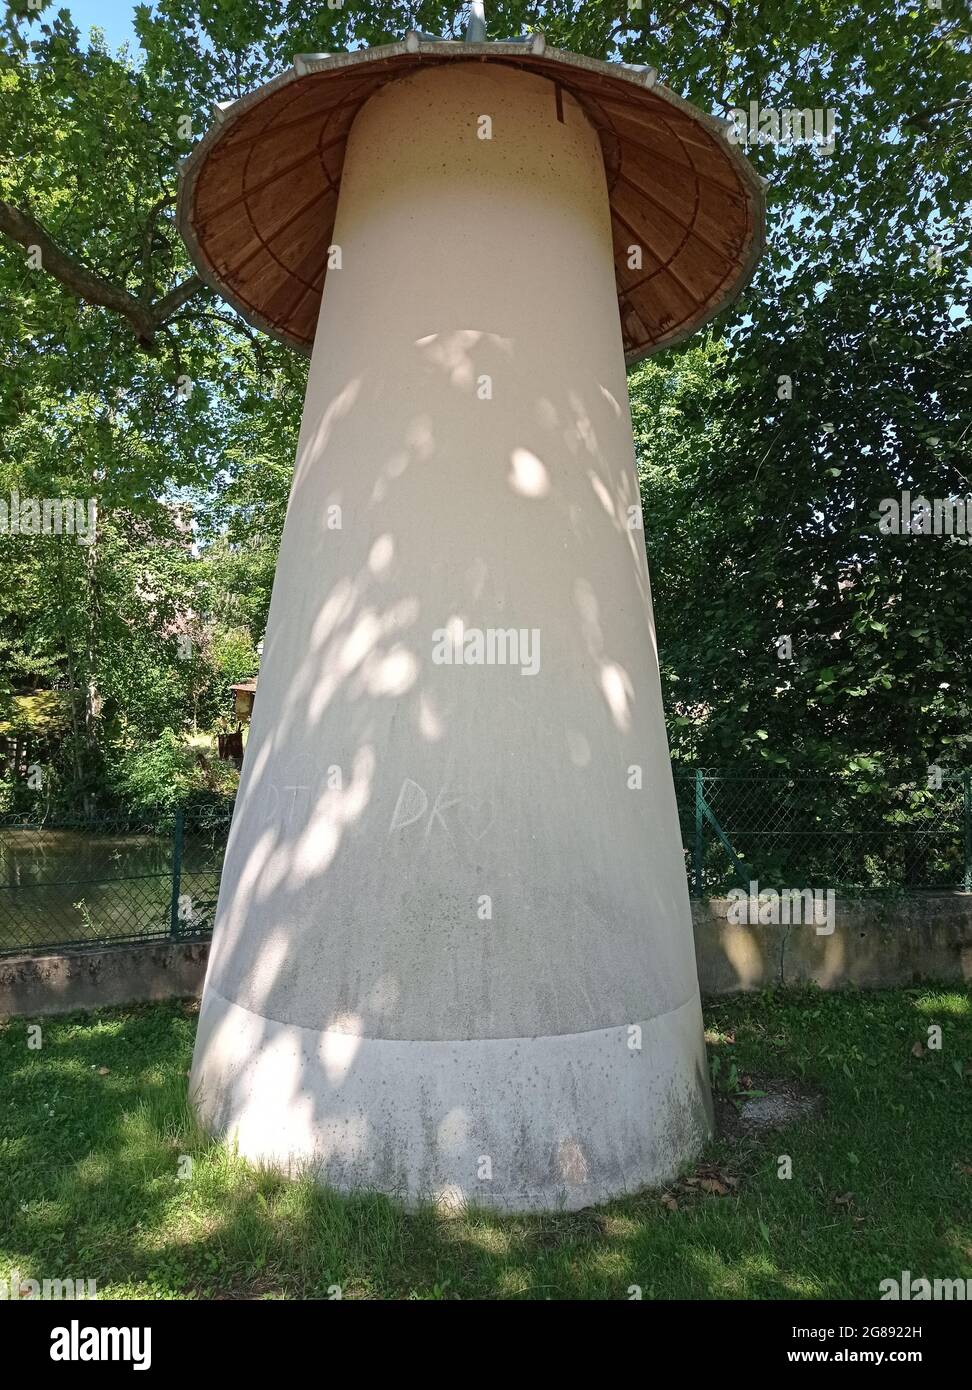 Statue-champignon dans un parc à Saint Florentin, Yonne, France Stock Photo  - Alamy